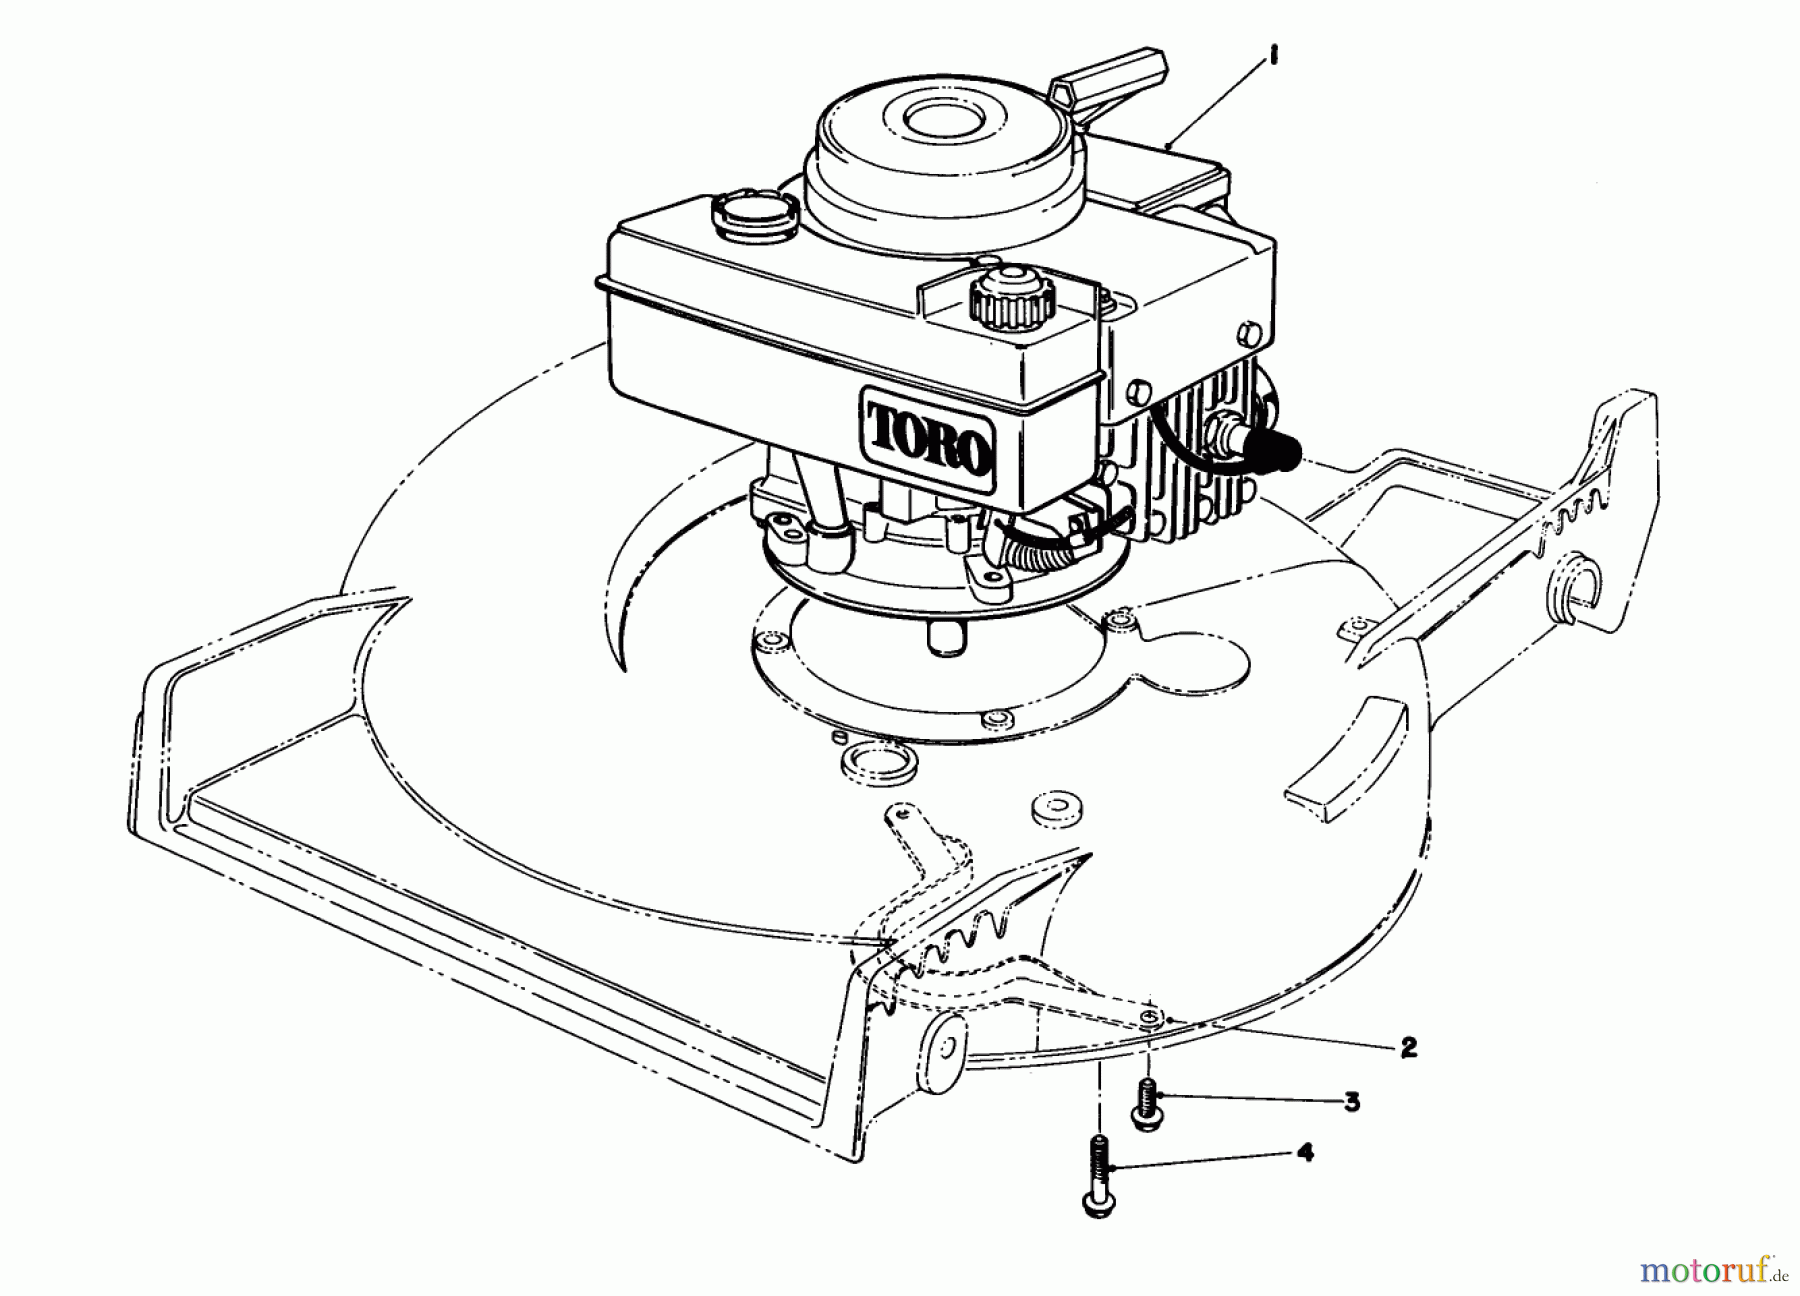  Toro Neu Mowers, Walk-Behind Seite 1 20695 - Toro Lawnmower, 1988 (8000001-8999999) ENGINE ASSEMBLY